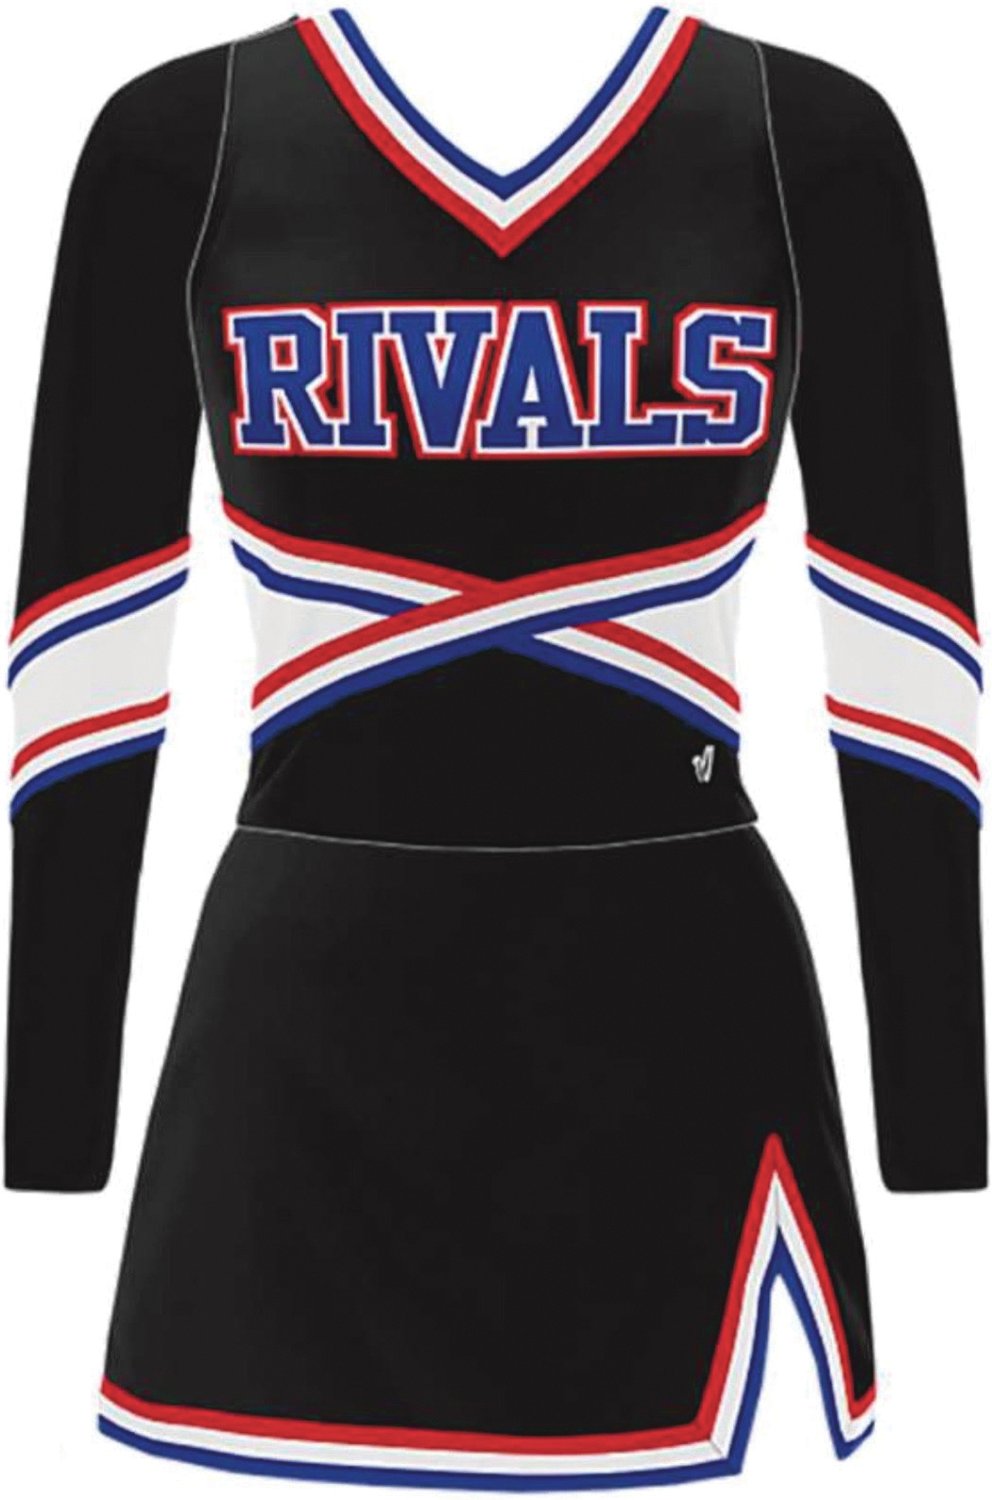 The new Rivals cheer uniform.